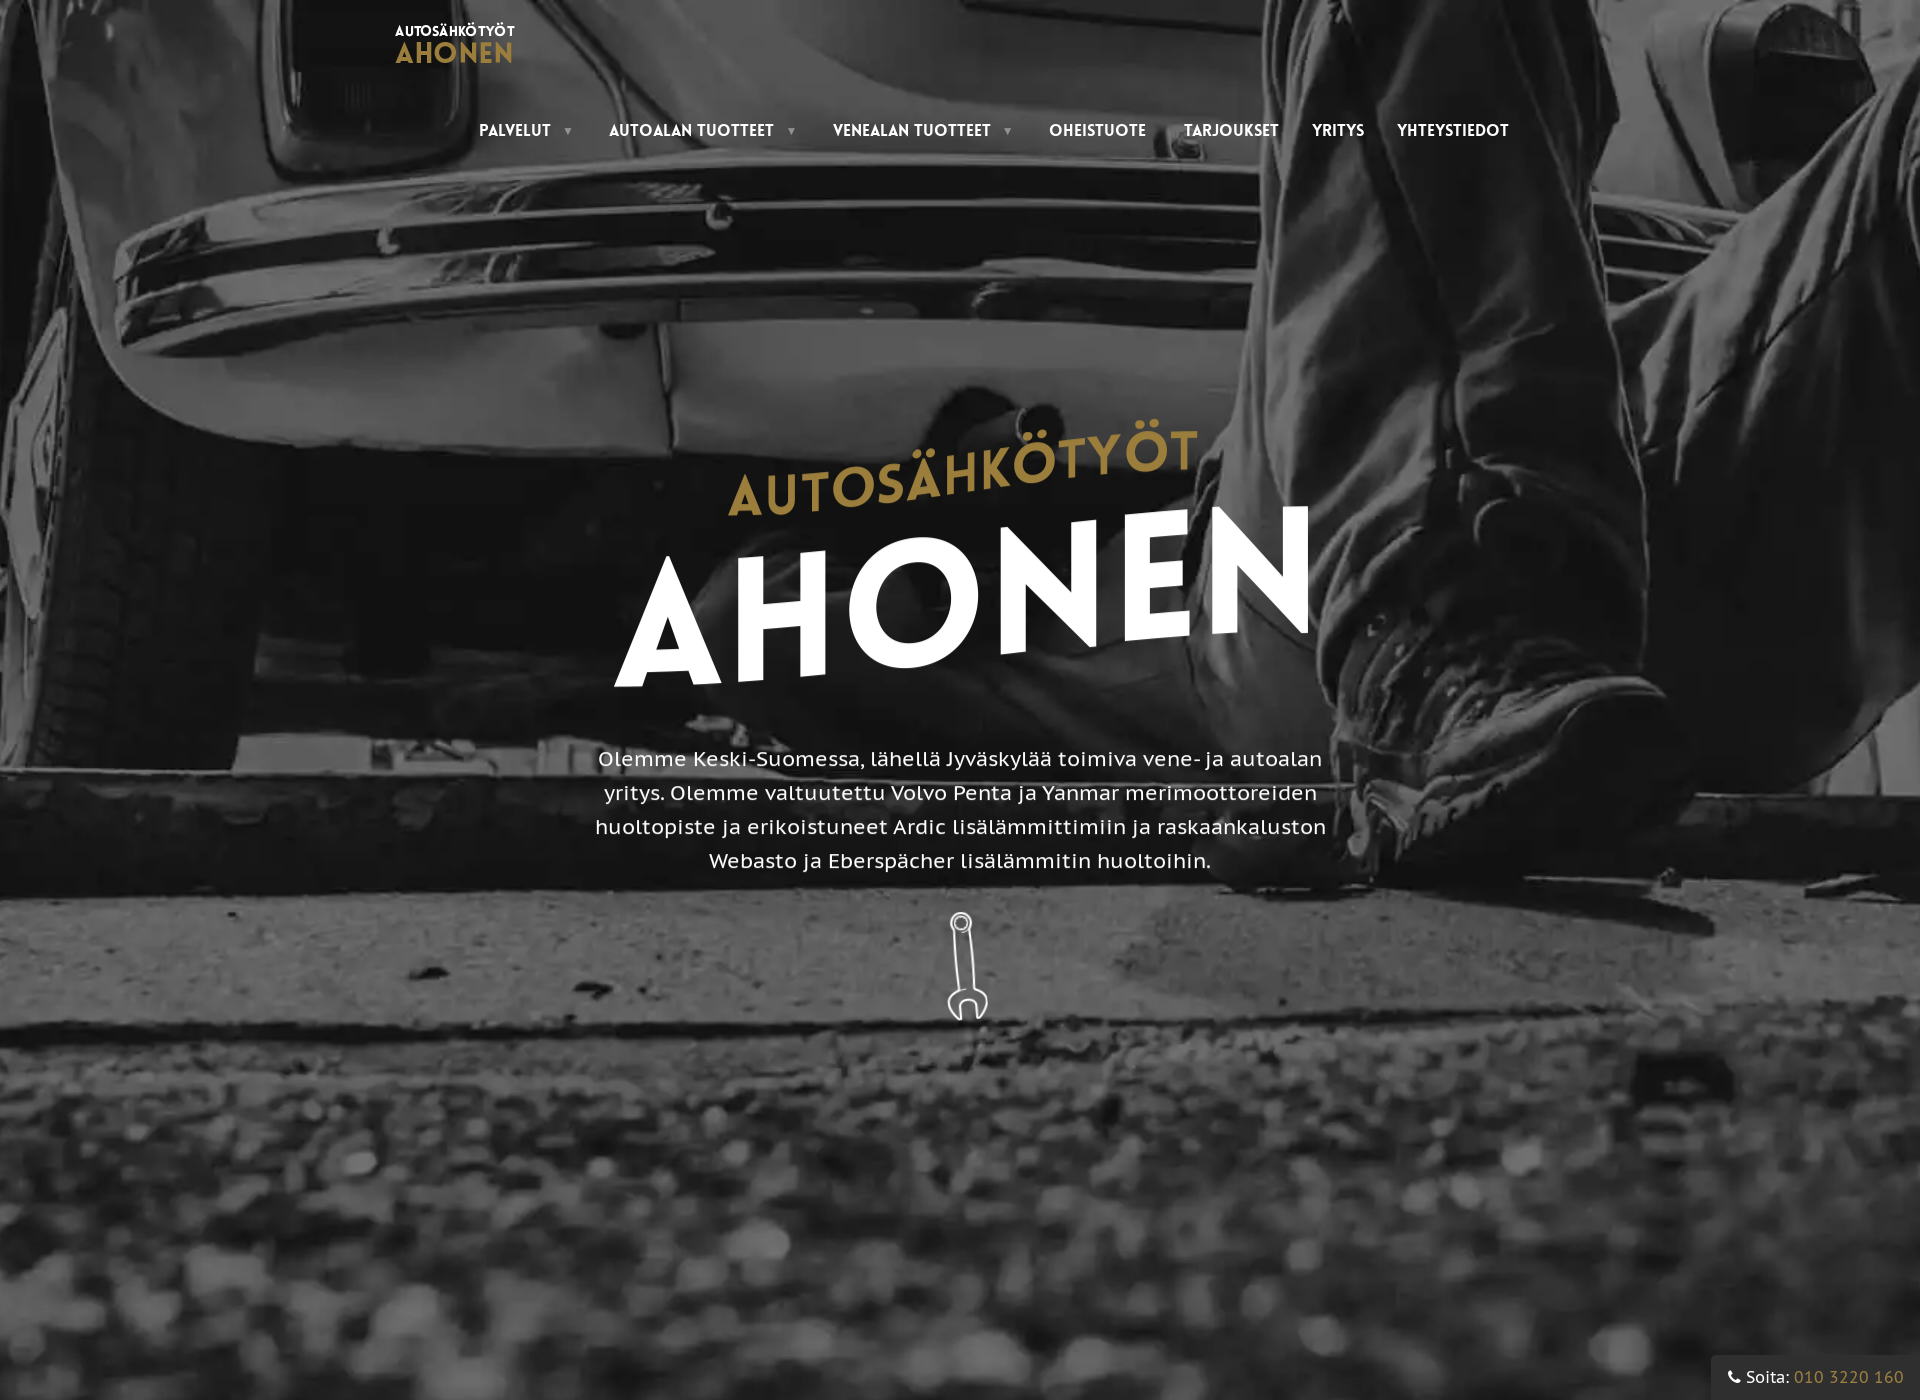 Screenshot for autosahkotyotahonen.fi